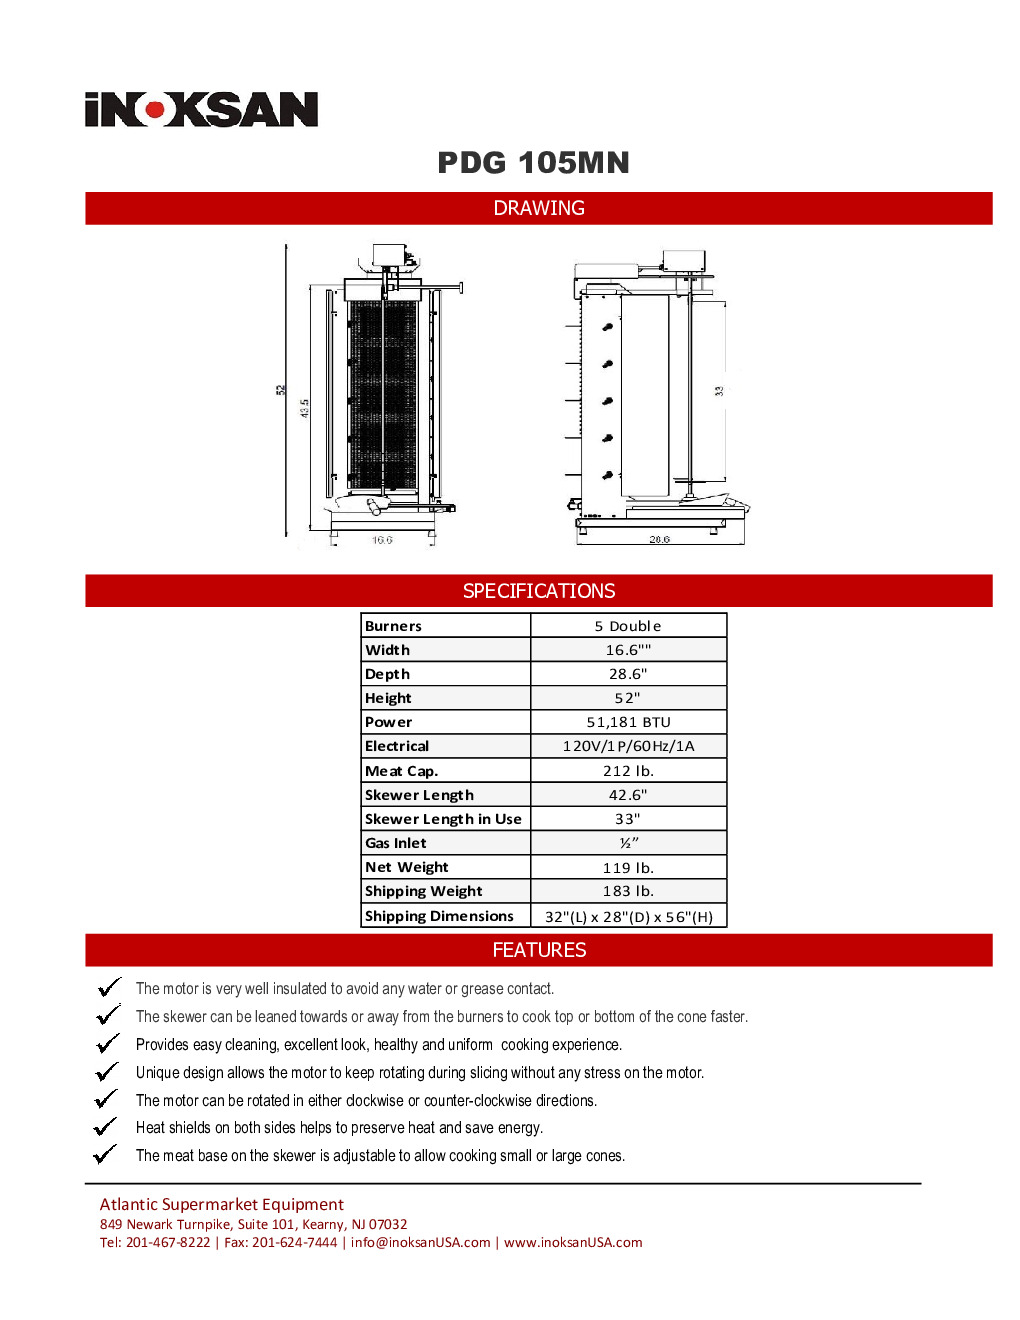 Inoksan PDG105MN Gas Vertical Broiler (Gyro)